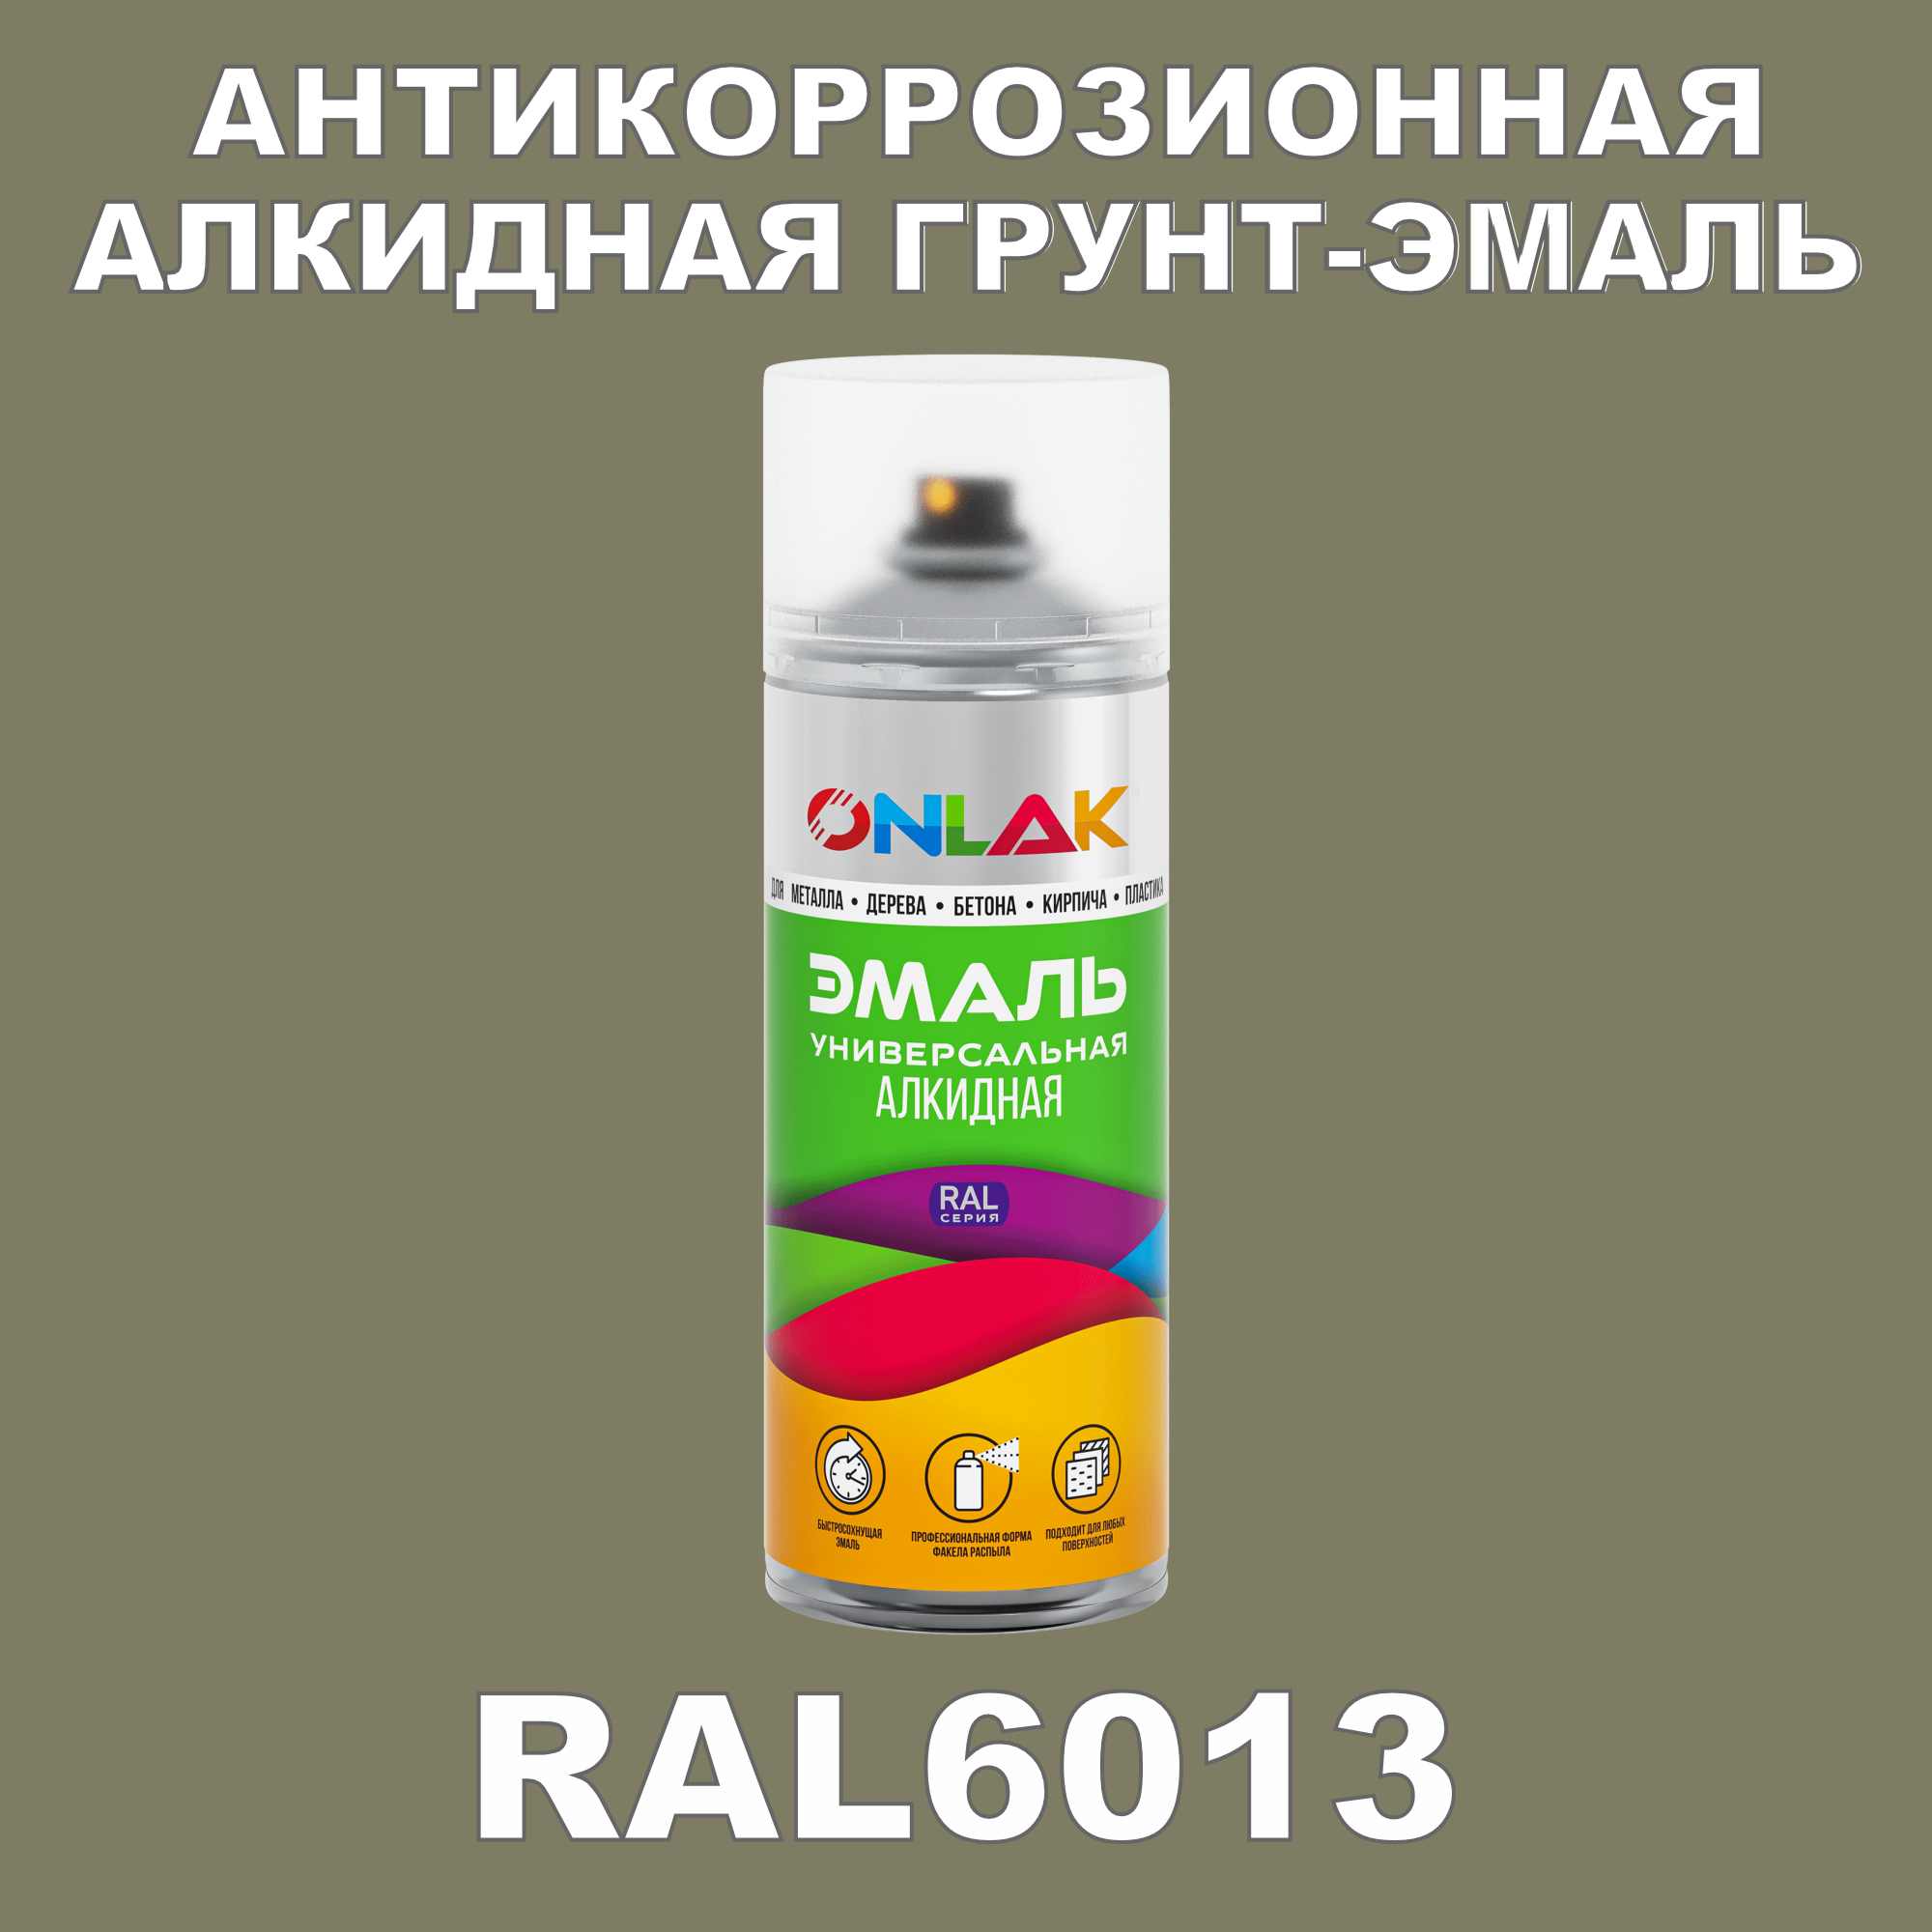 Антикоррозионная грунт-эмаль ONLAK RAL 6013,зеленый,643 мл влагоизолирующий грунт концентрат для наружных и внутренних работ ореол